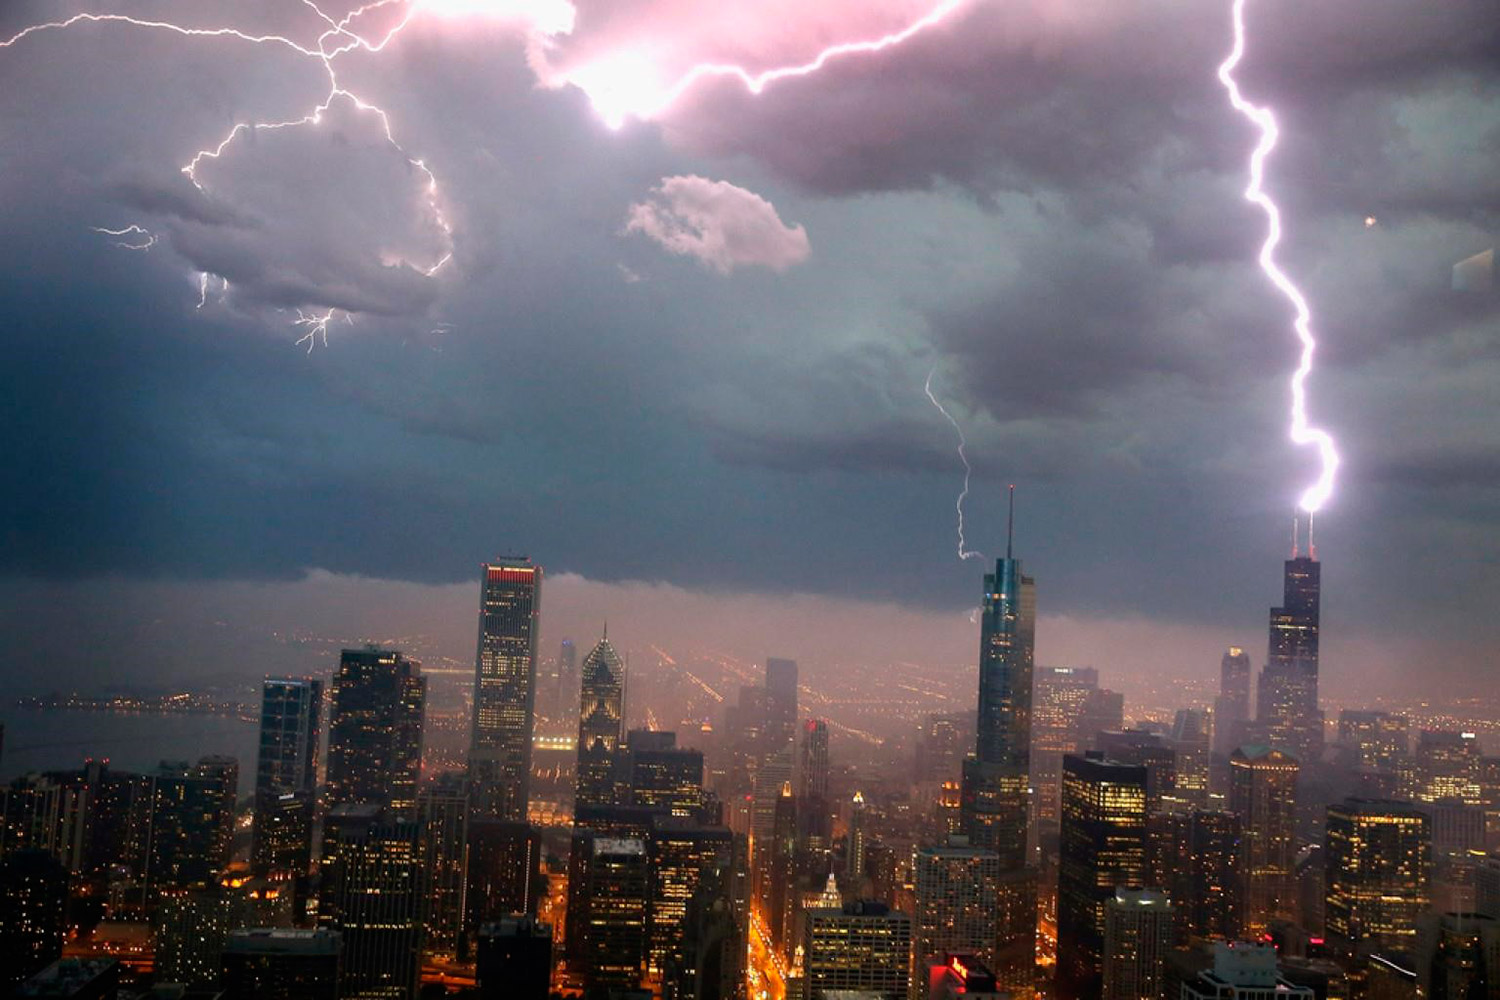 Dubái prohíble la publicación de fotografías "irresponsables" de tormentas